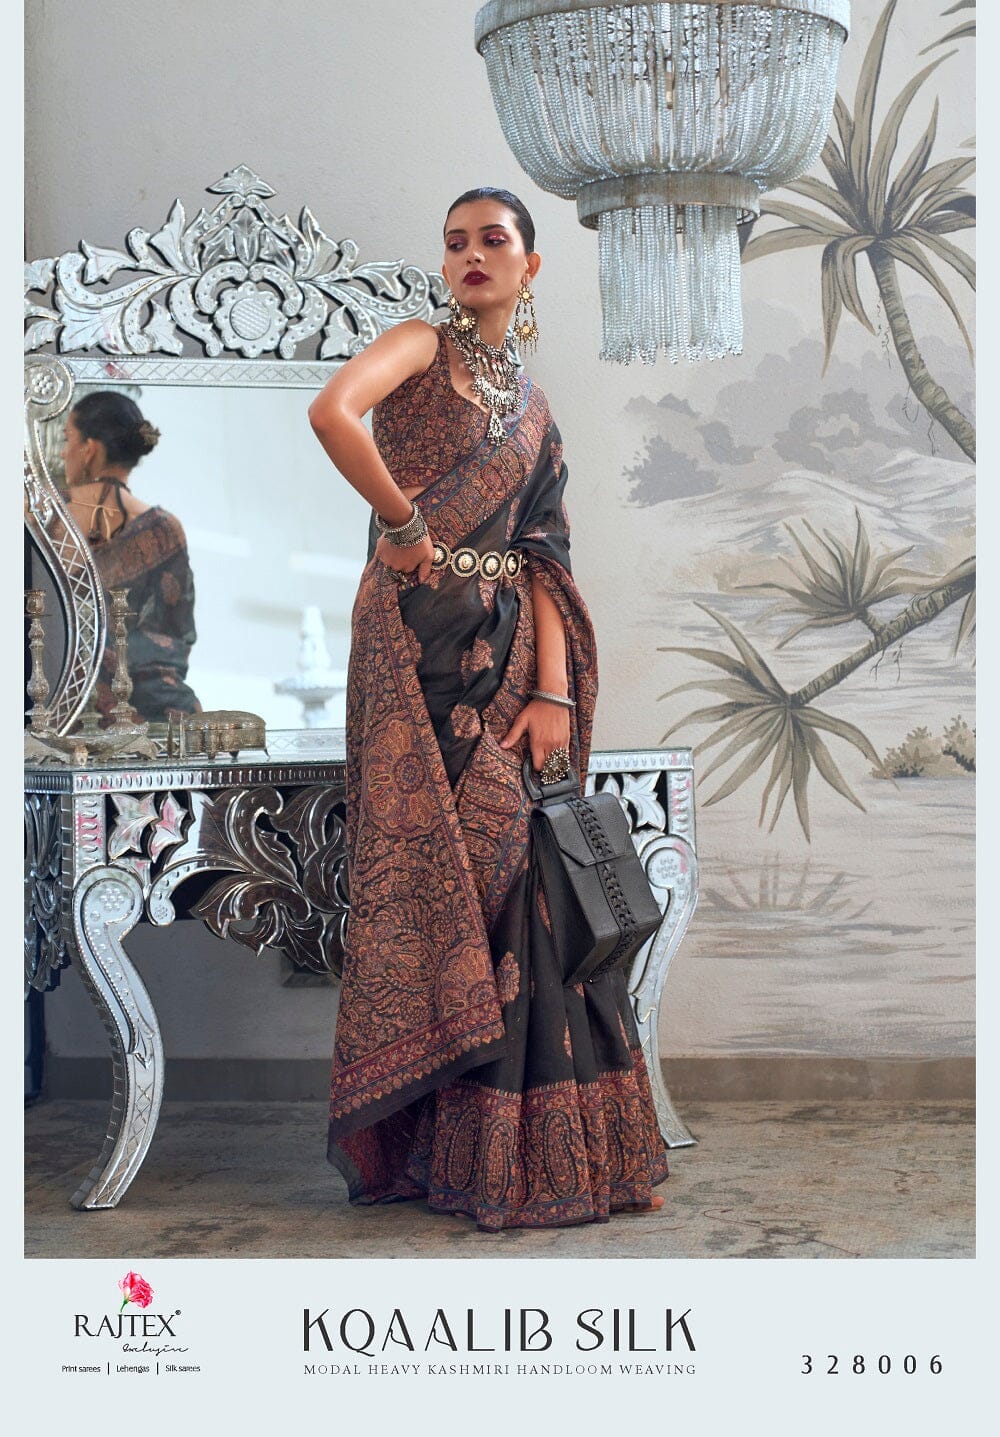 328006 Rajtex Kqaalib Silk Heavy Handloom Weaving Saree Silk Saree Rajtex 